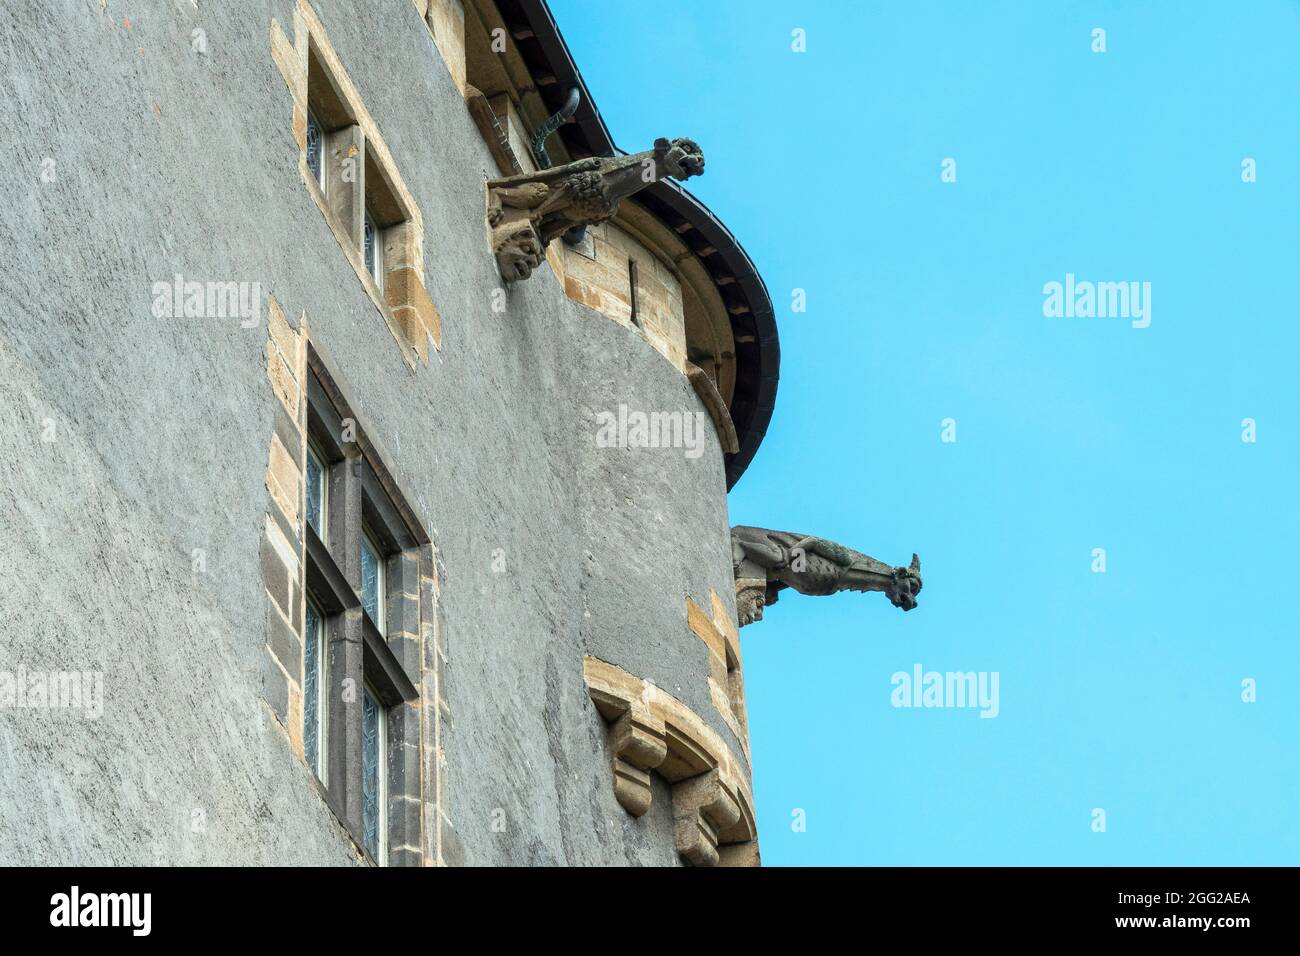 Saint Amant Tallende, gargouilles du château de Murol à Saint Amant, Puy de Dome, Auvergne Rhône Alpes, France Banque D'Images